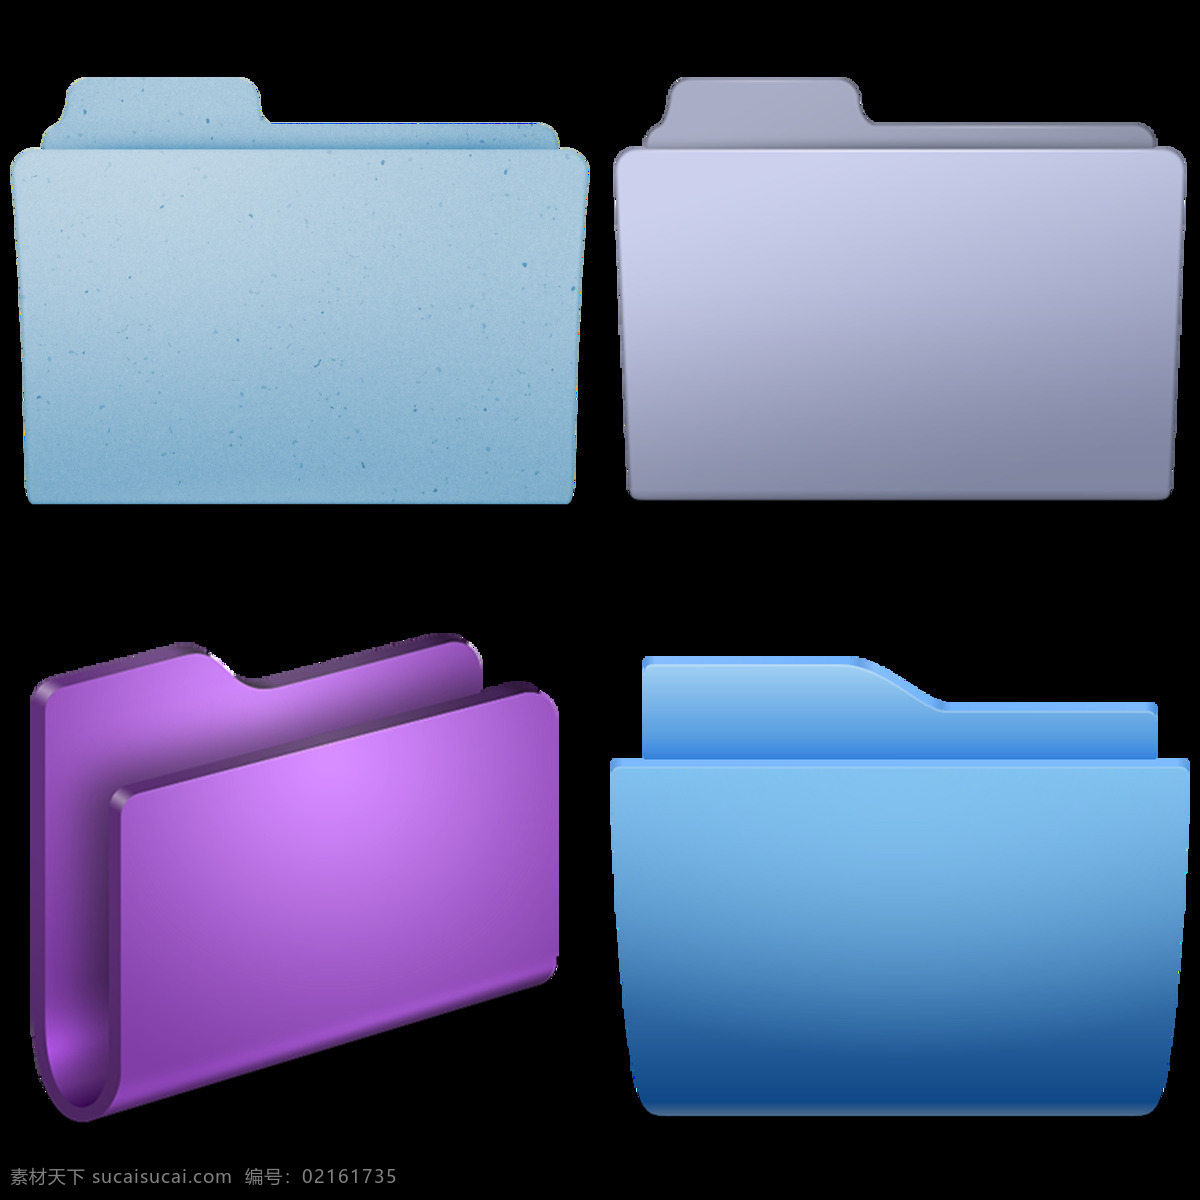 四 种 漂亮 文件夹 免 抠 透明 图 层 创意 图标 个性 icon 图标素材 电脑 ico 文件夹大图标